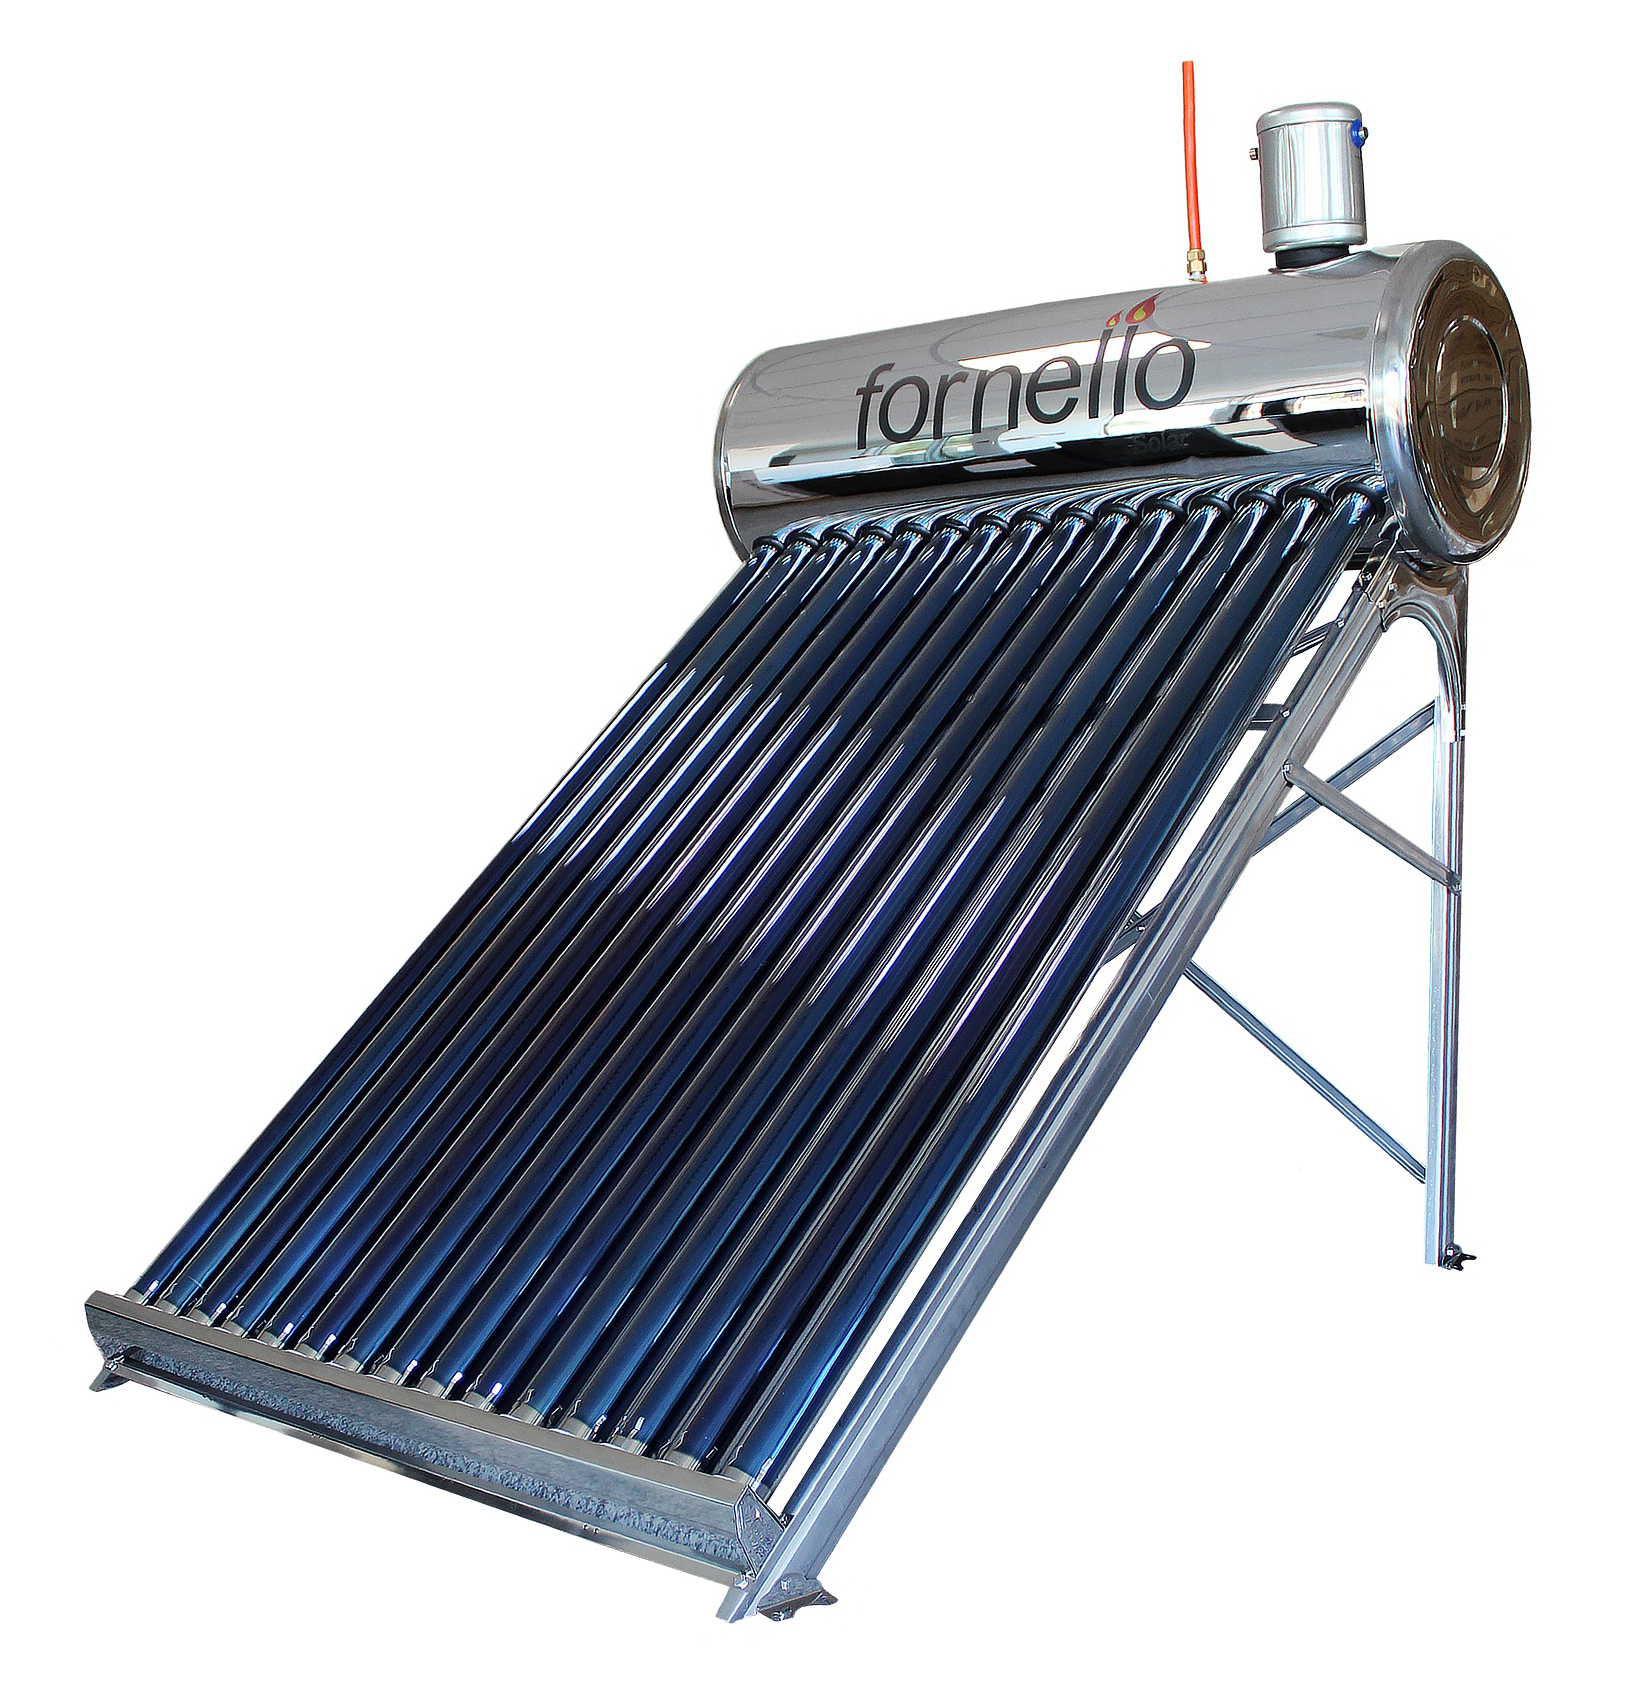 Panou solar nepresurizat Fornello pentru producere apa calda, cu rezervor inox 165 litri si 20 tuburi vidate